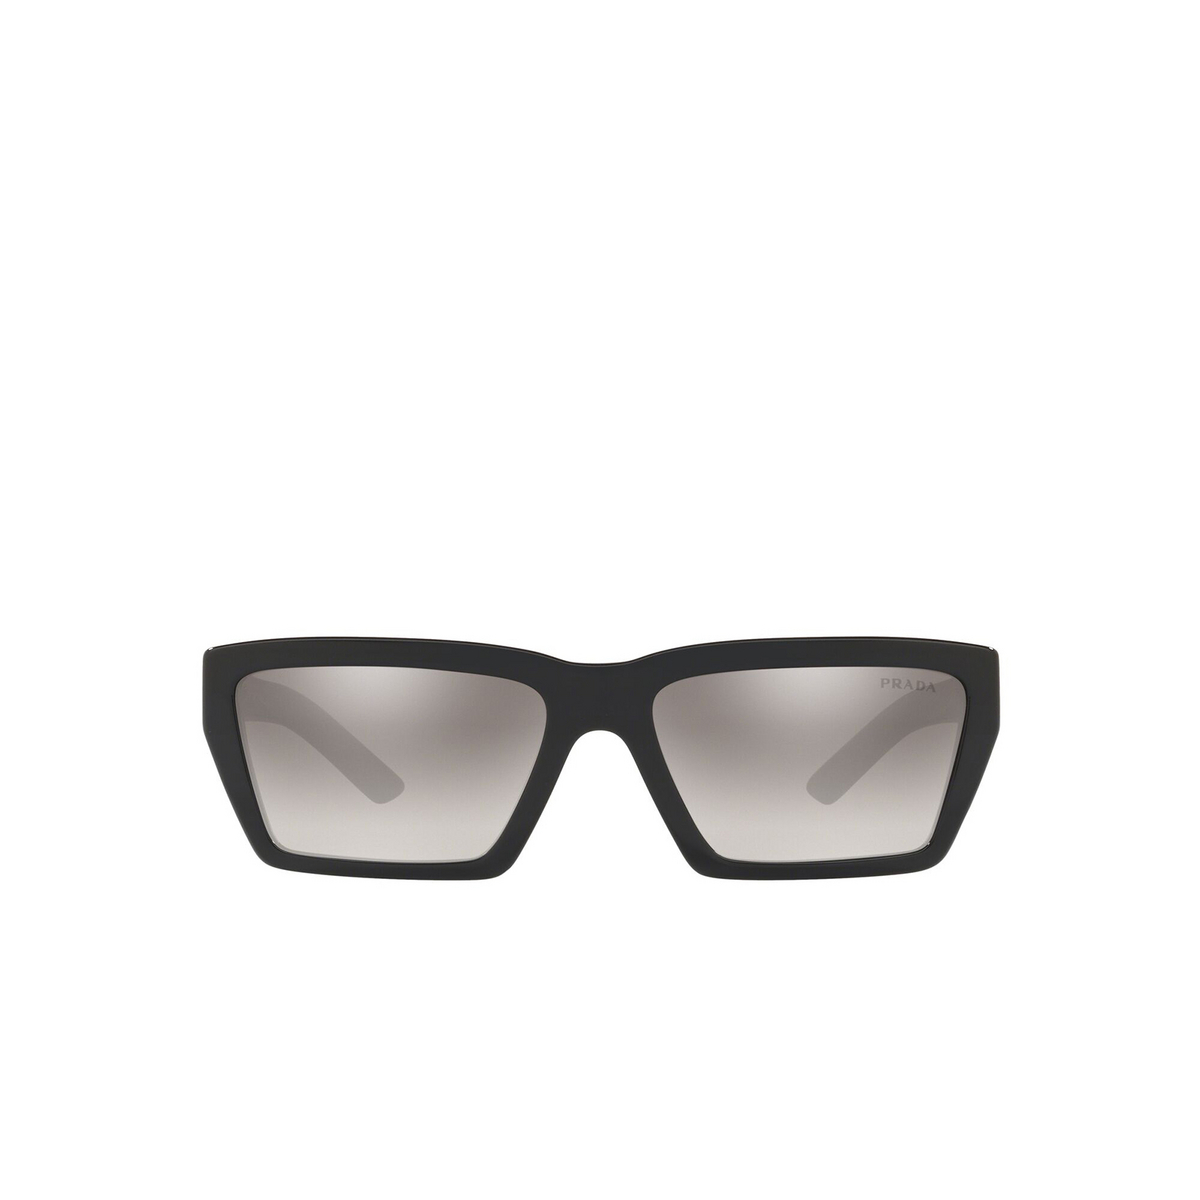 Prada® Square Sunglasses: Millennials PR 04VS color Black 1AB5O0 - front view.